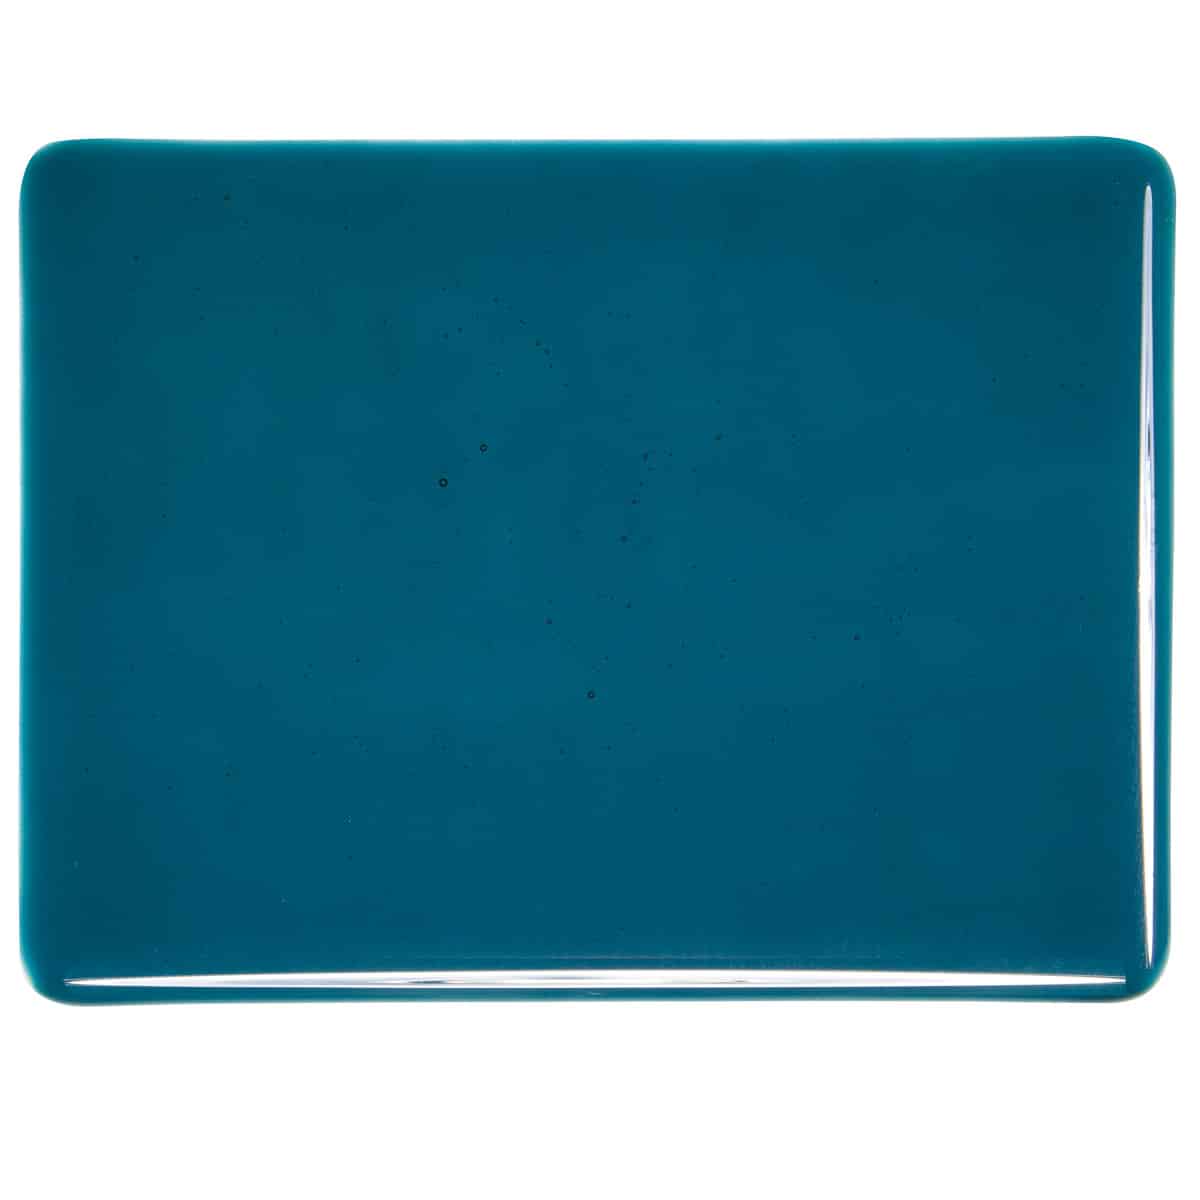 001108 Transparent Aquamarine Blue sheet glass swatch